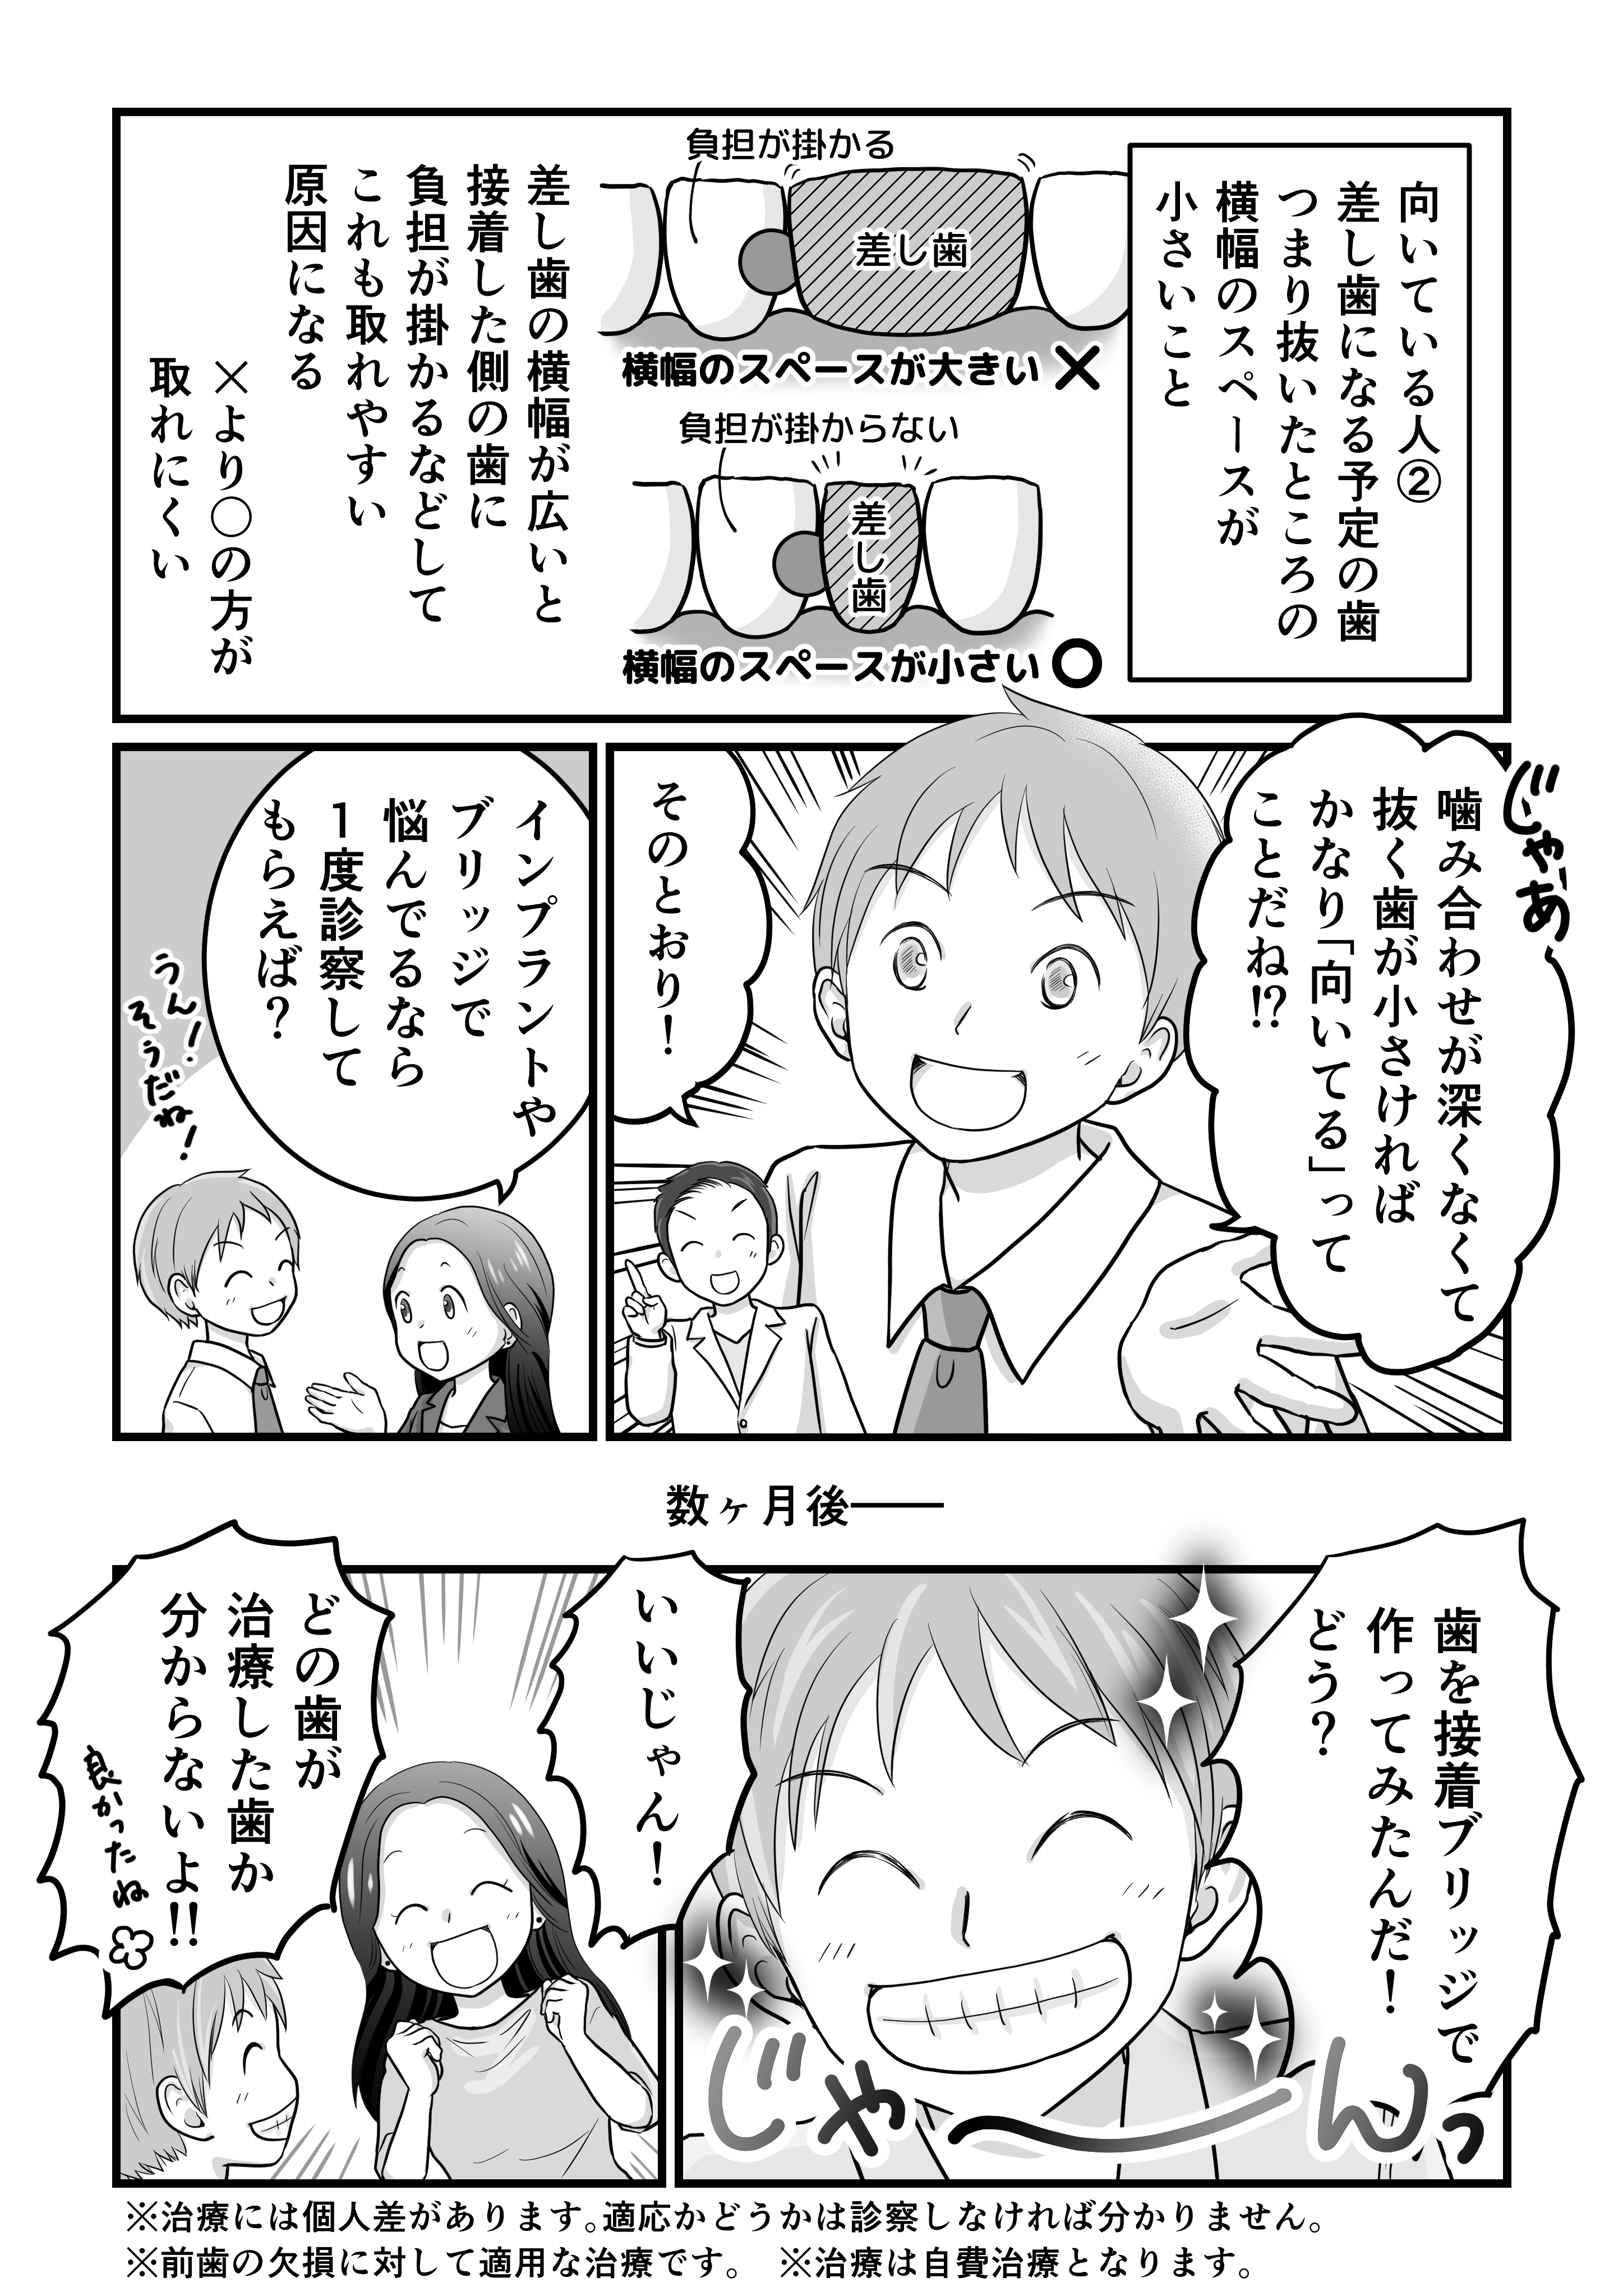 田島様歯科漫画（確認用低画質）_005